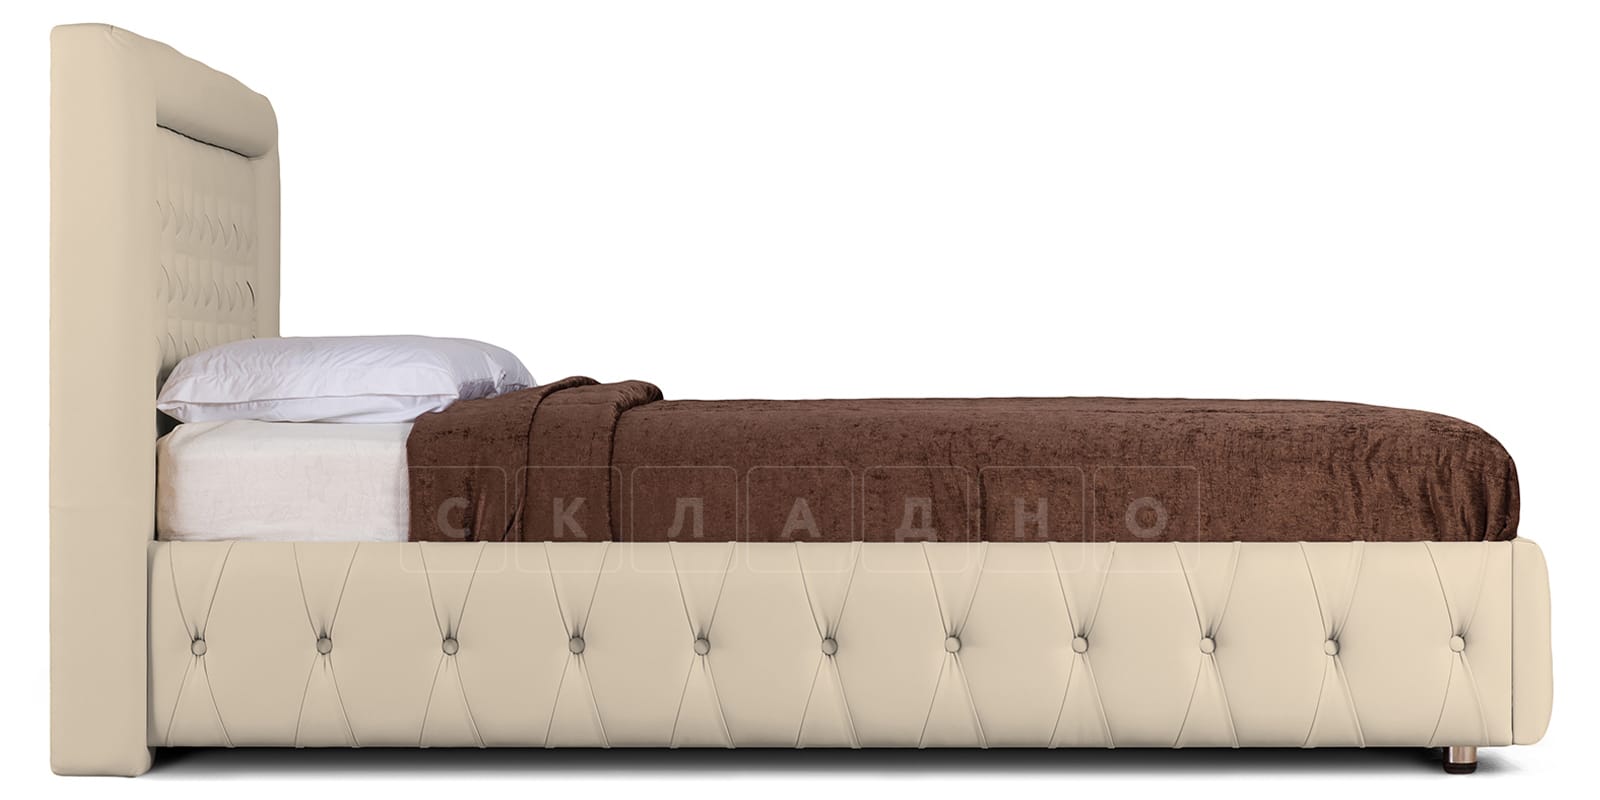 Мягкая кровать Малибу 160см экокожа бежевый вариант 7-2 фото 3 | интернет-магазин Складно